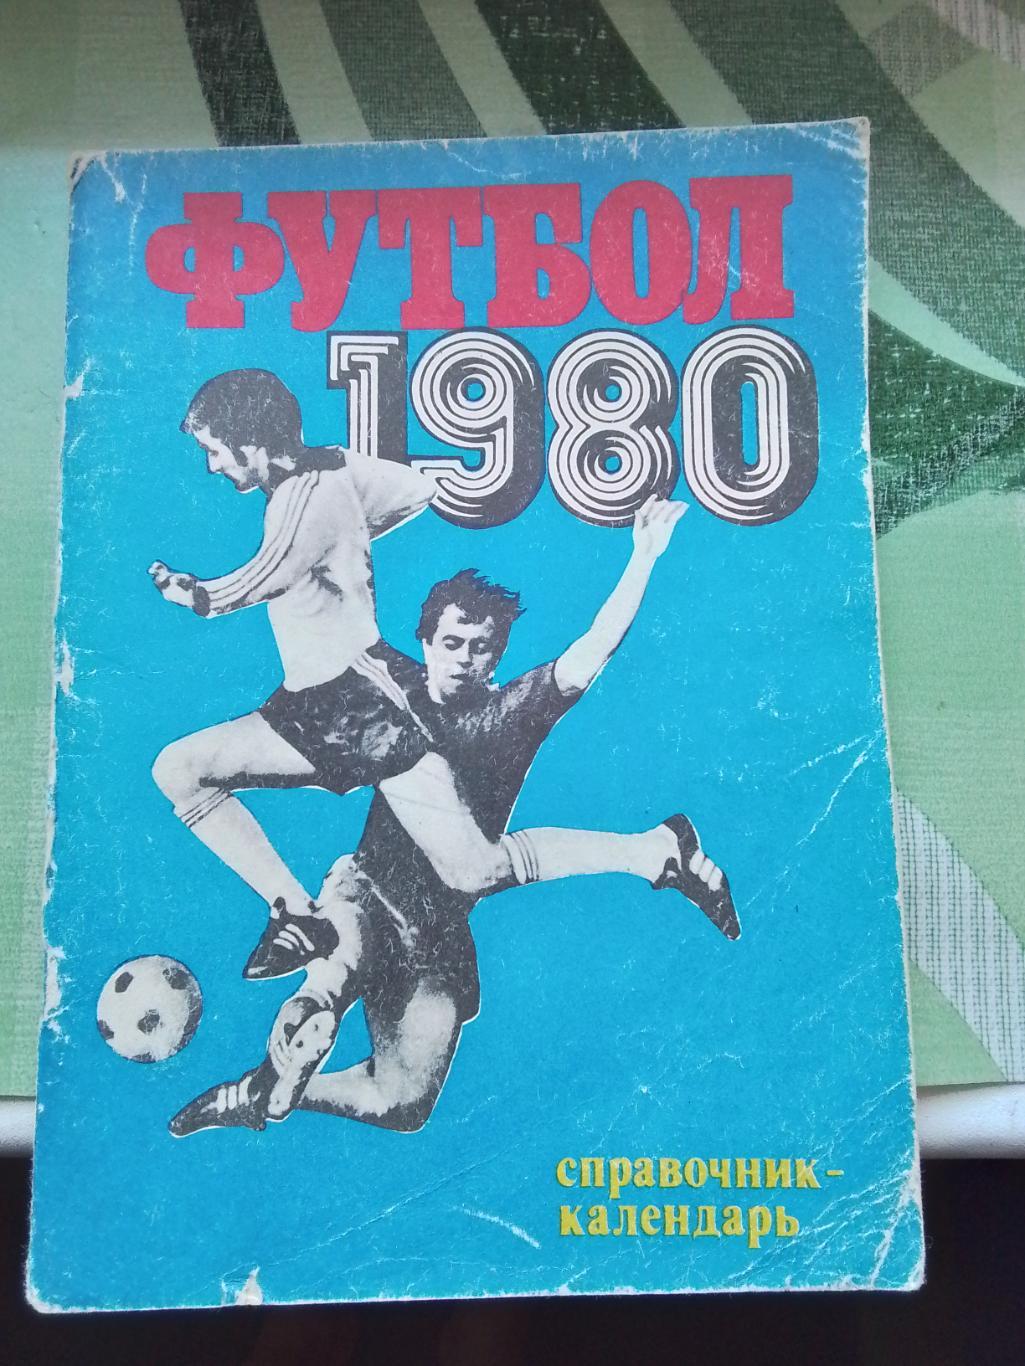 Календарь - справочник Лужники Москва 1980